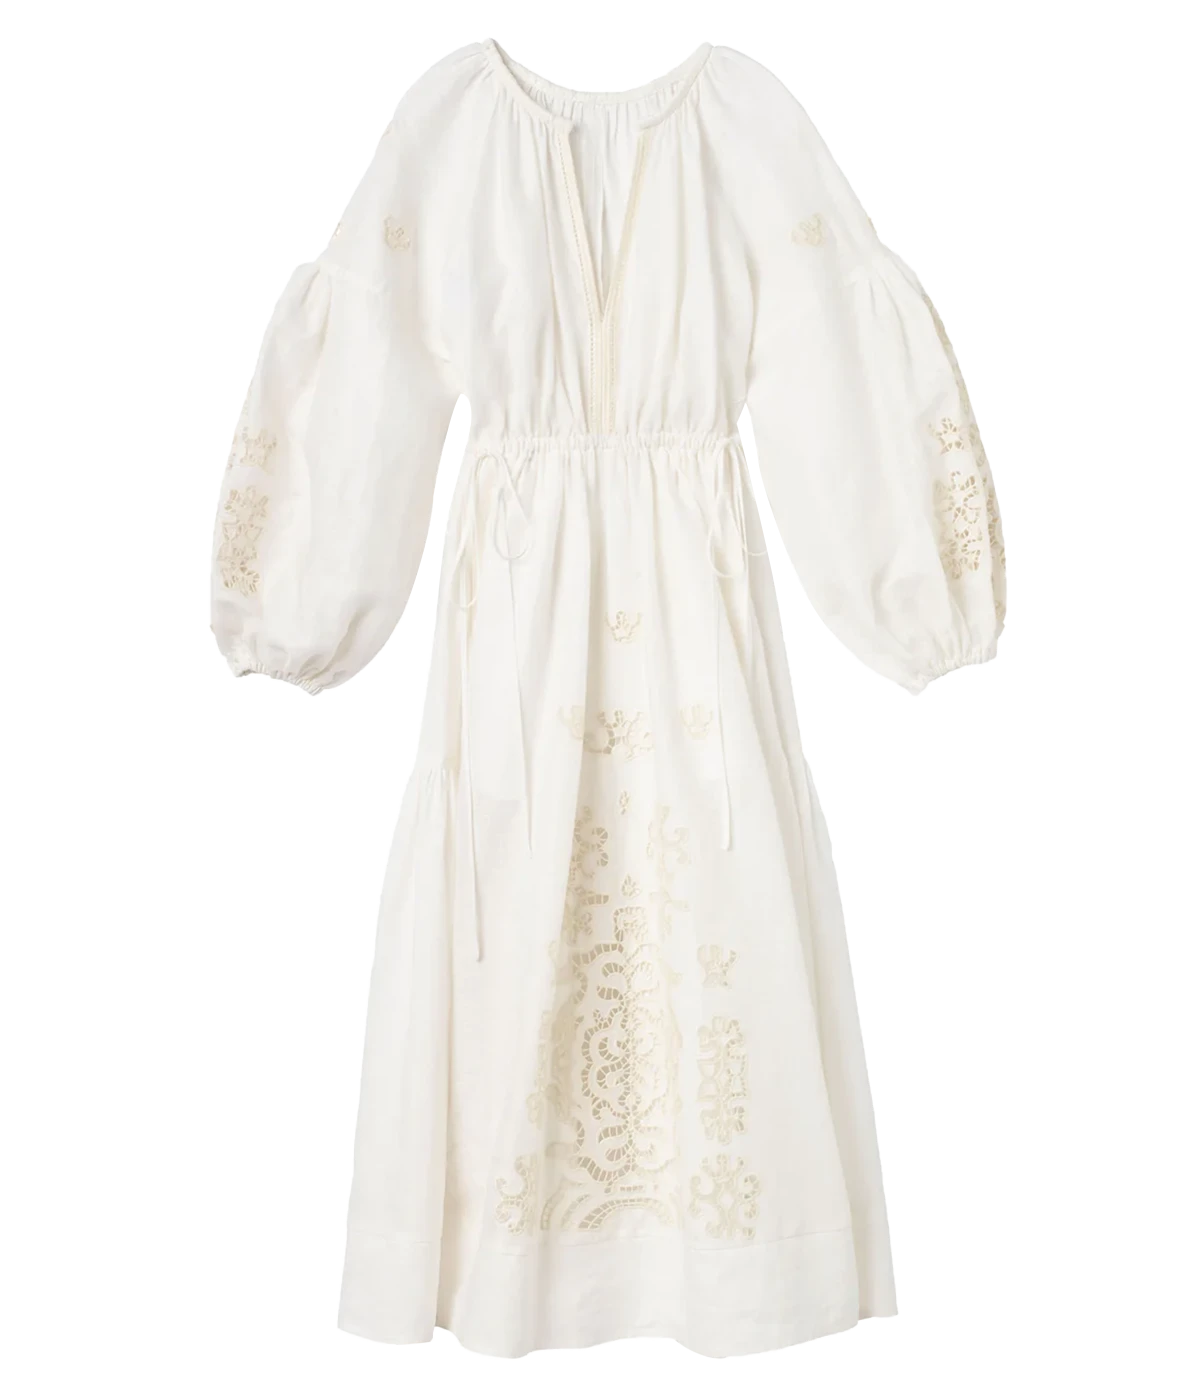 Capri Dress in White & Off White